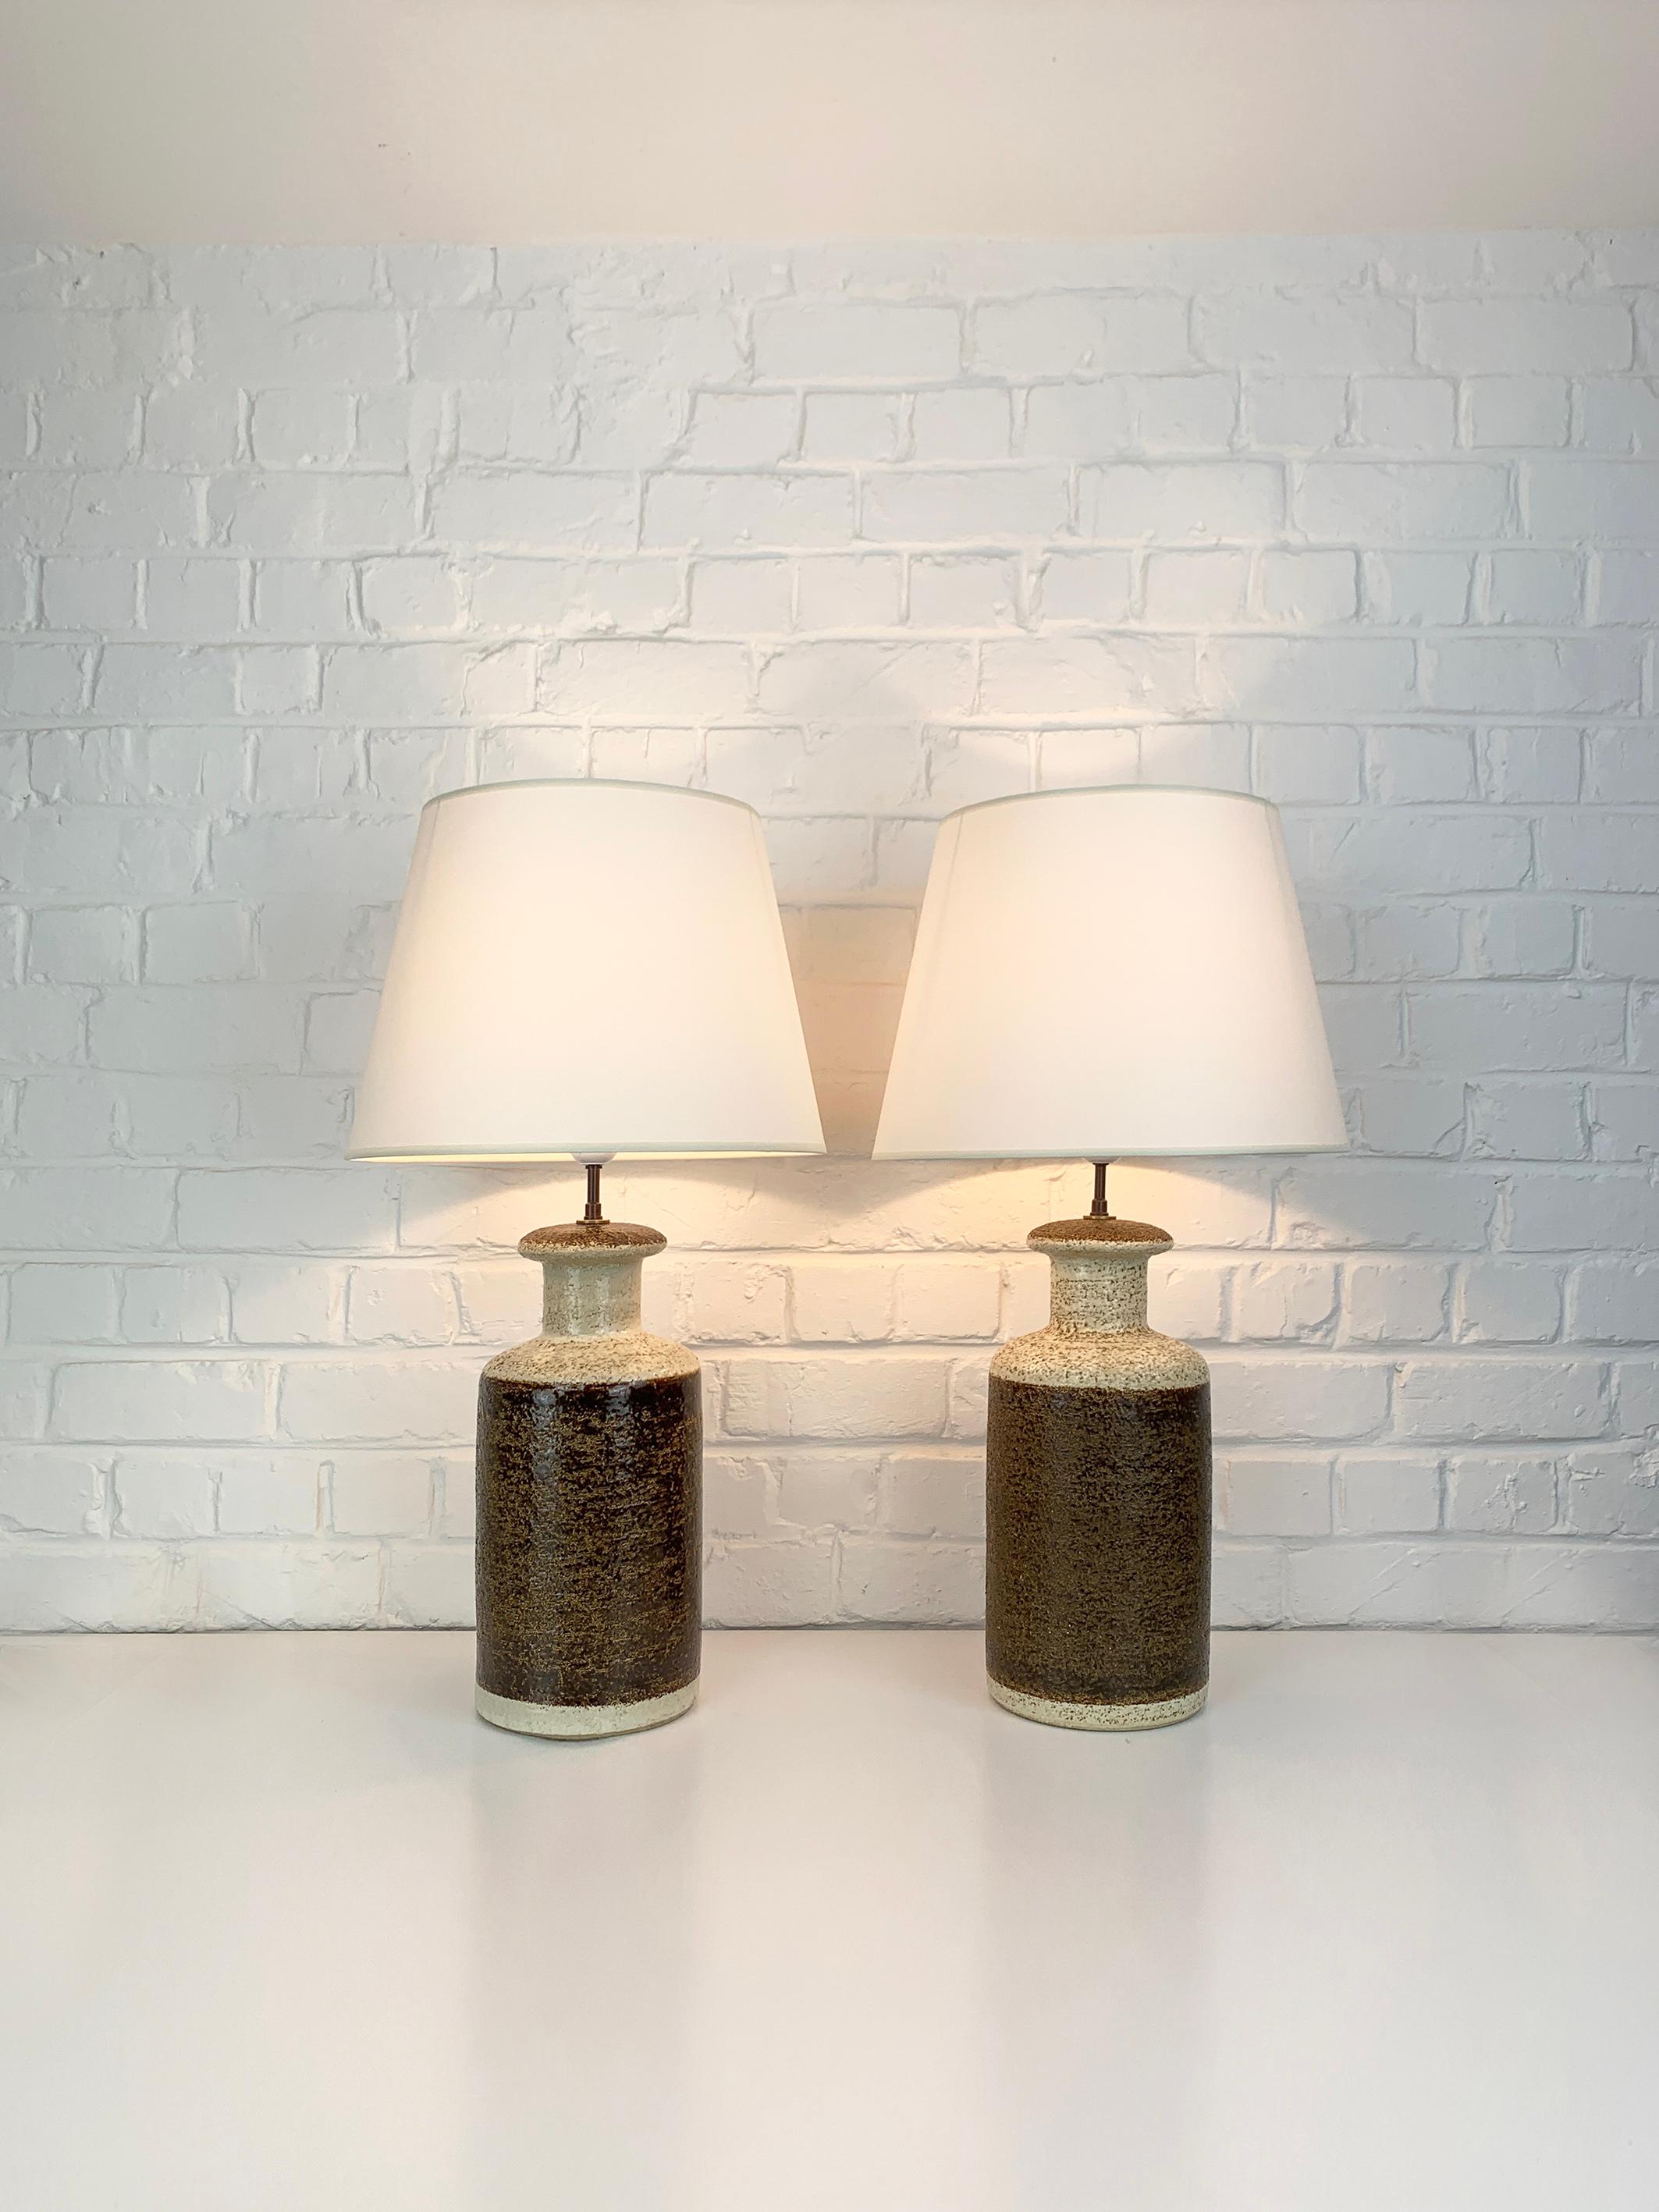 Paire de lampes de table danoises en grès du milieu du siècle dernier des années 1970, design de Svend Aage Jensen. 

Pieds de lampe sculpturaux en terre chamottée avec glaçure de couleur terre, brun chocolat et beige. Ces lampes existent en